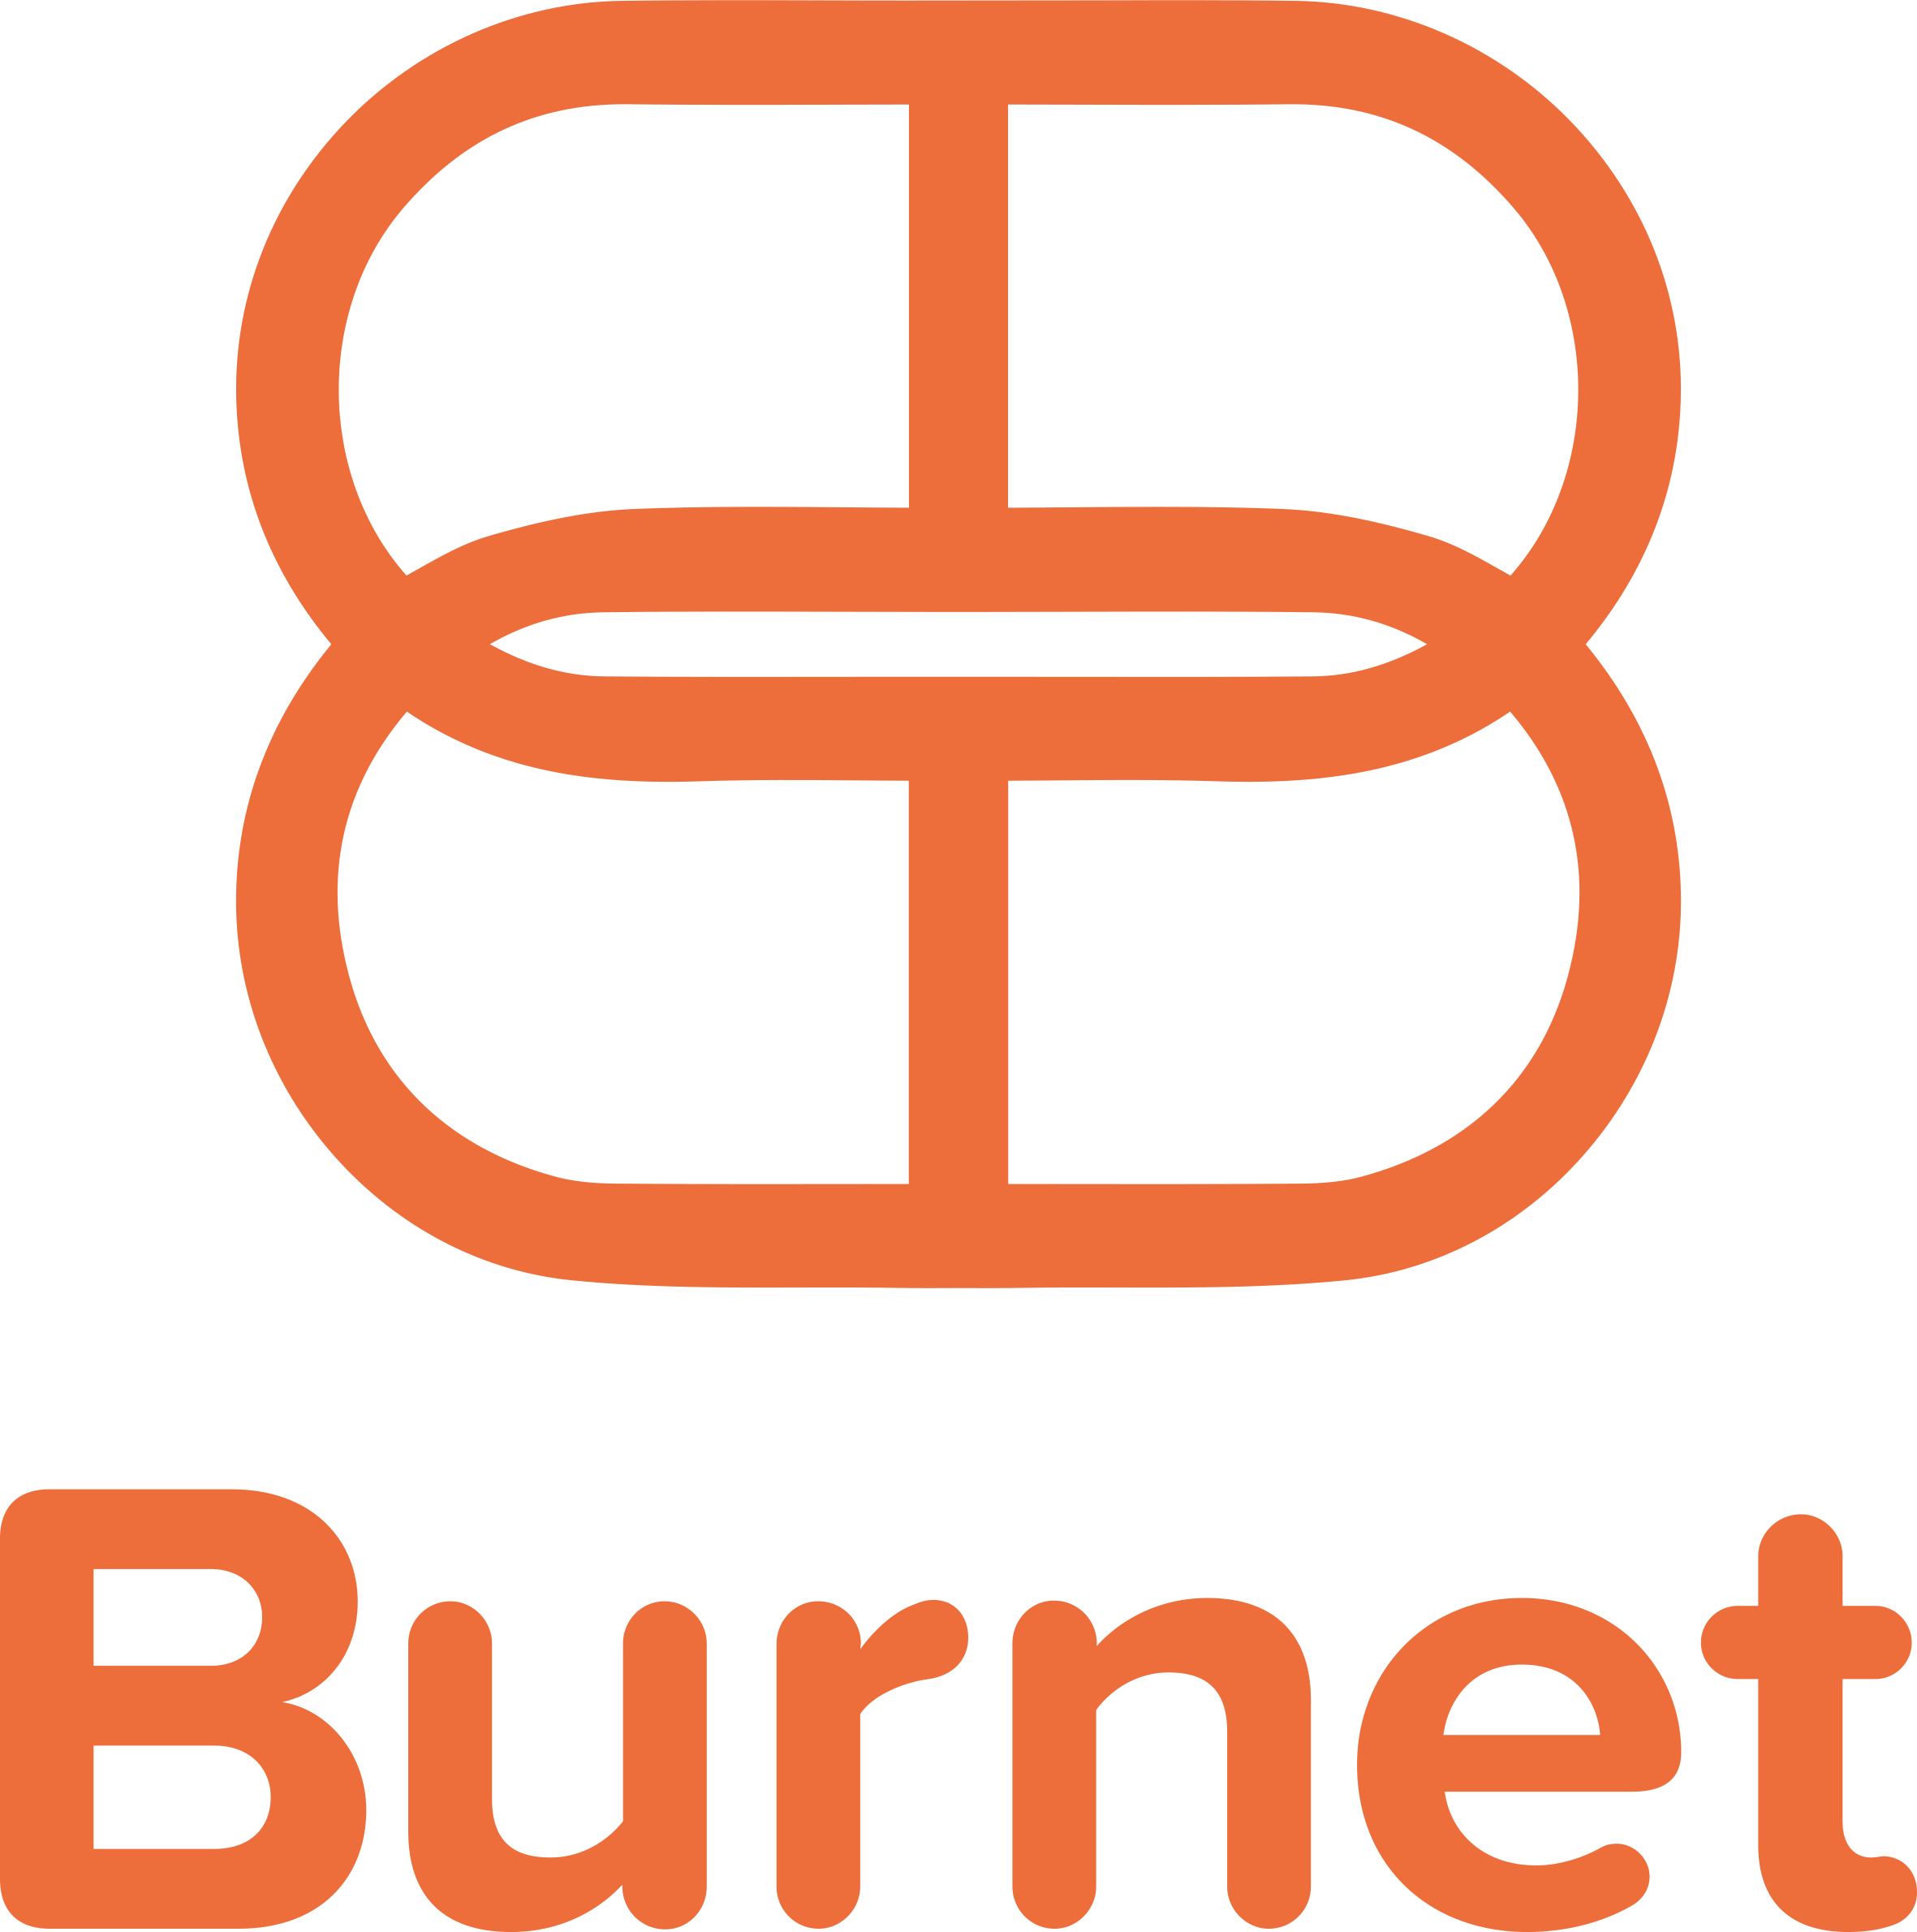 Burnet Institute (Advertisement) (Copy)